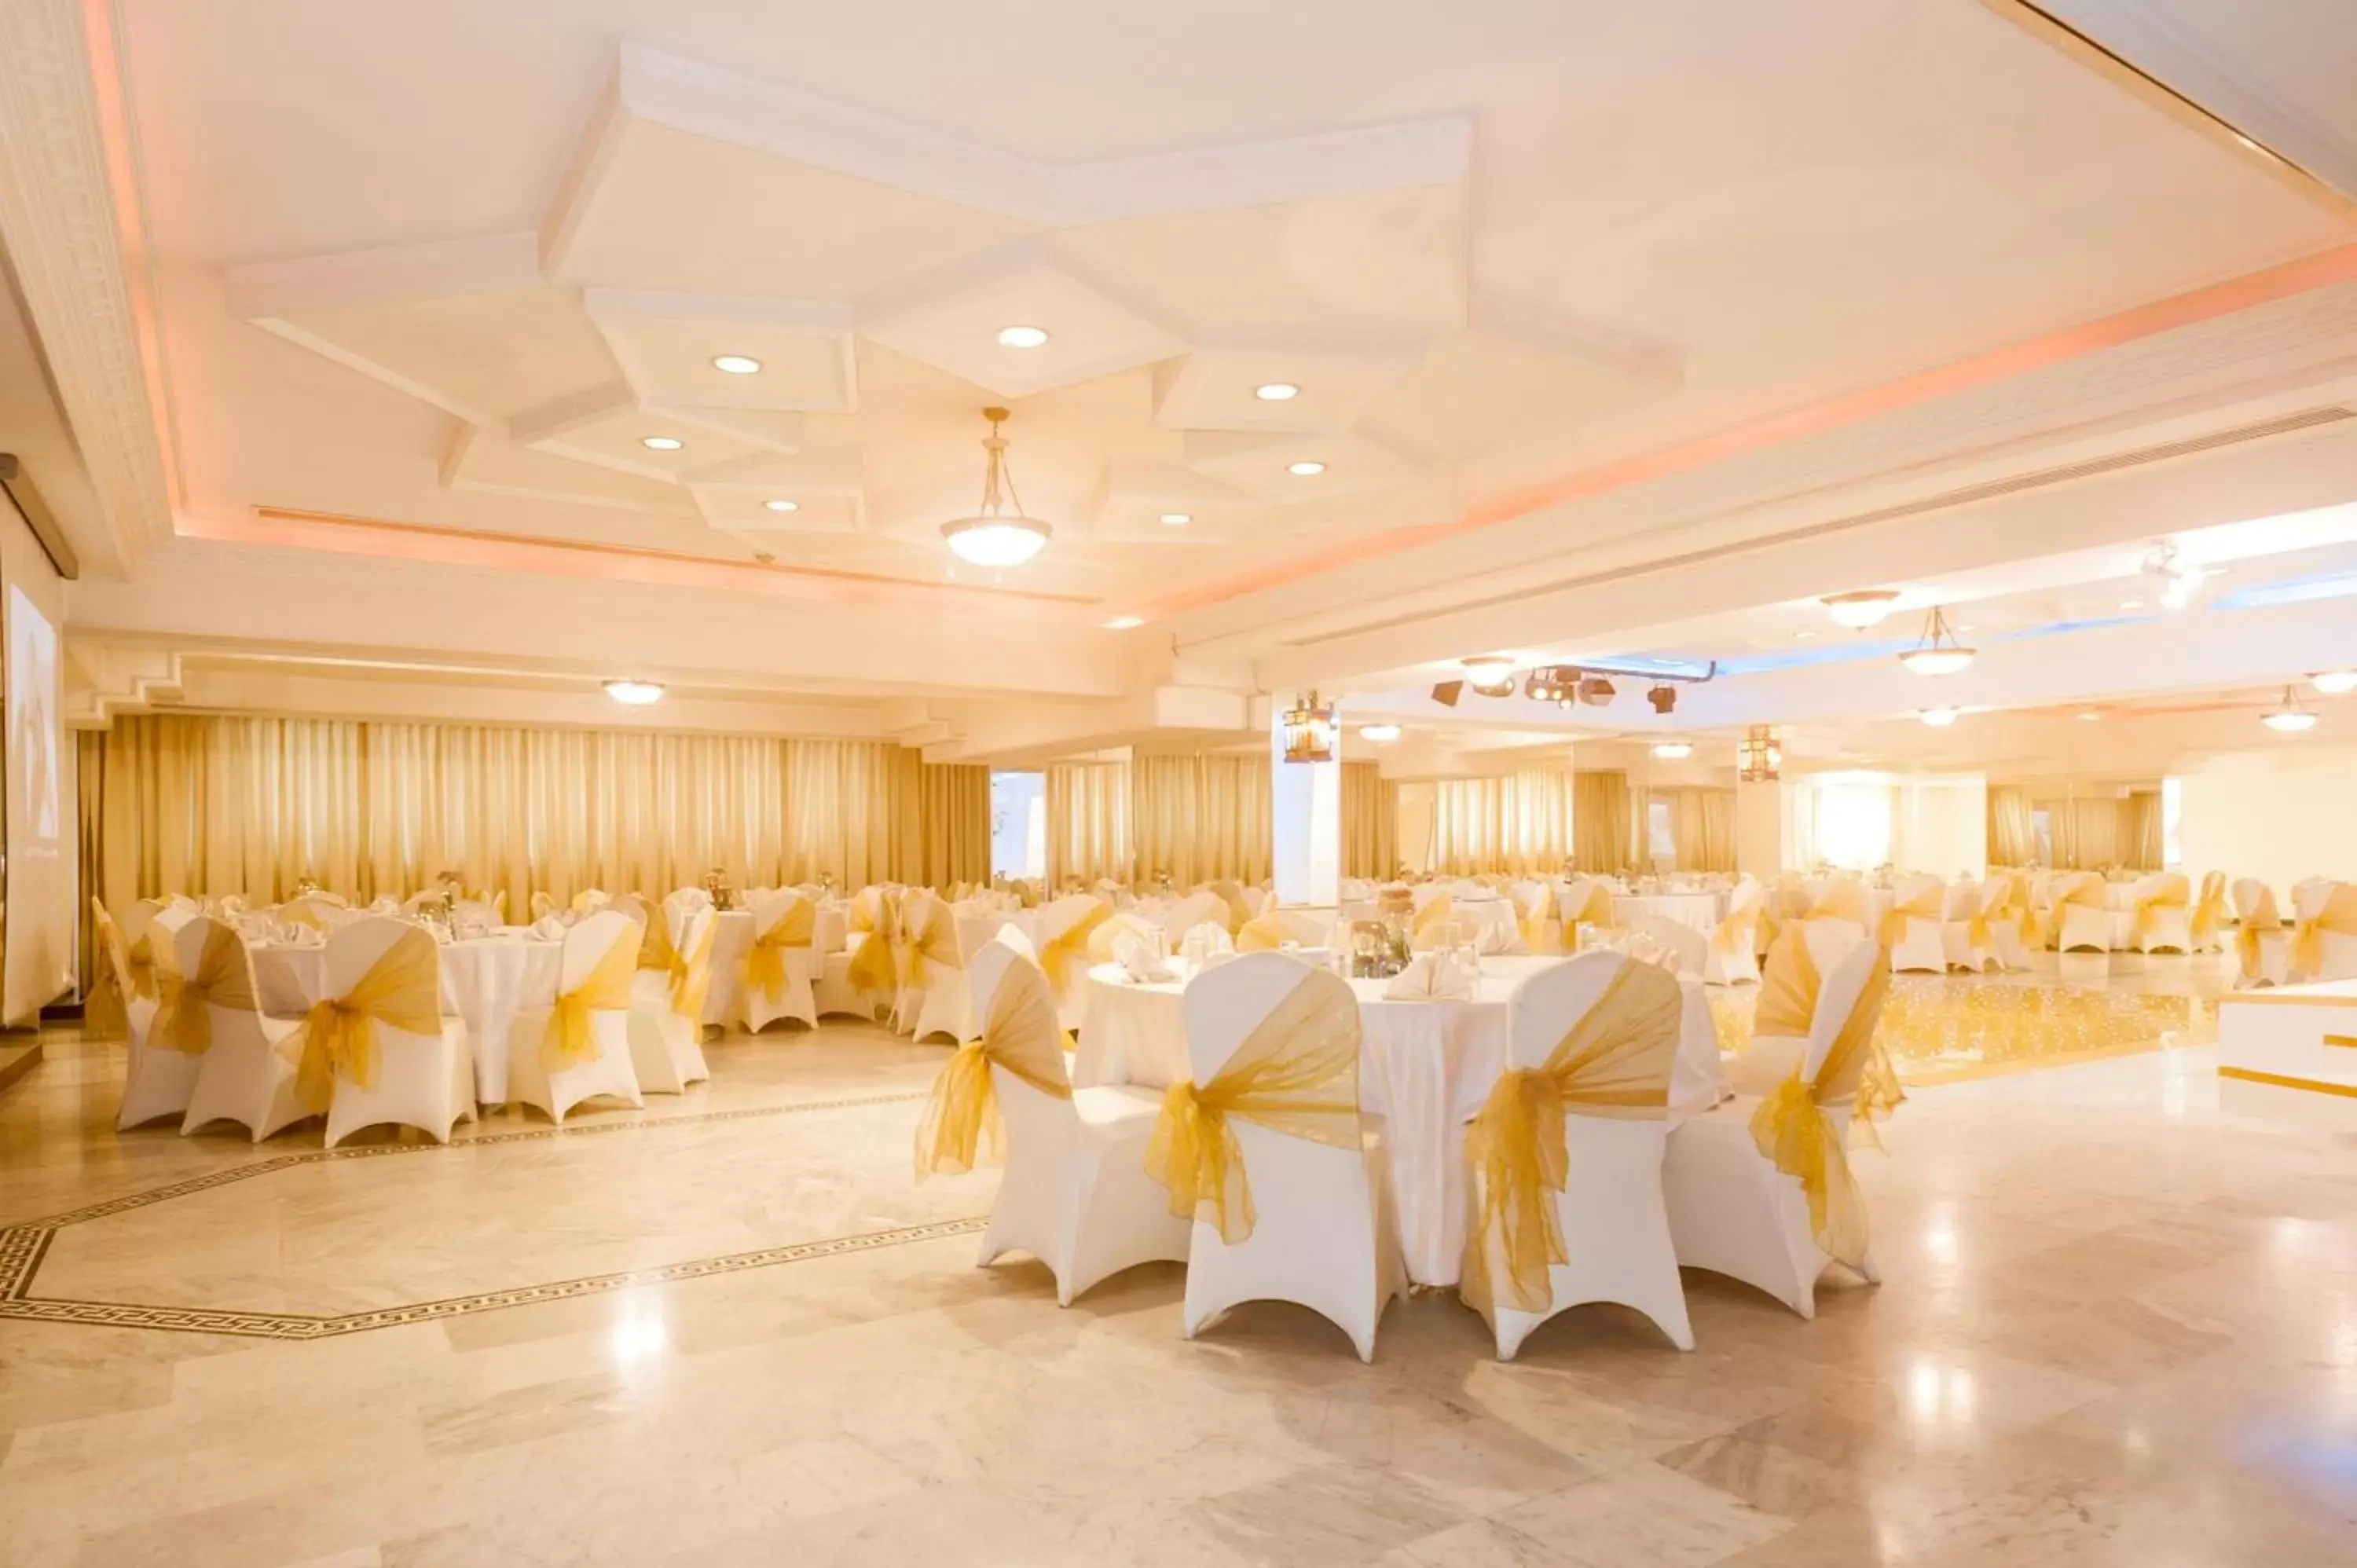 Banquet/Function facilities, Banquet Facilities in Toledo Amman Hotel